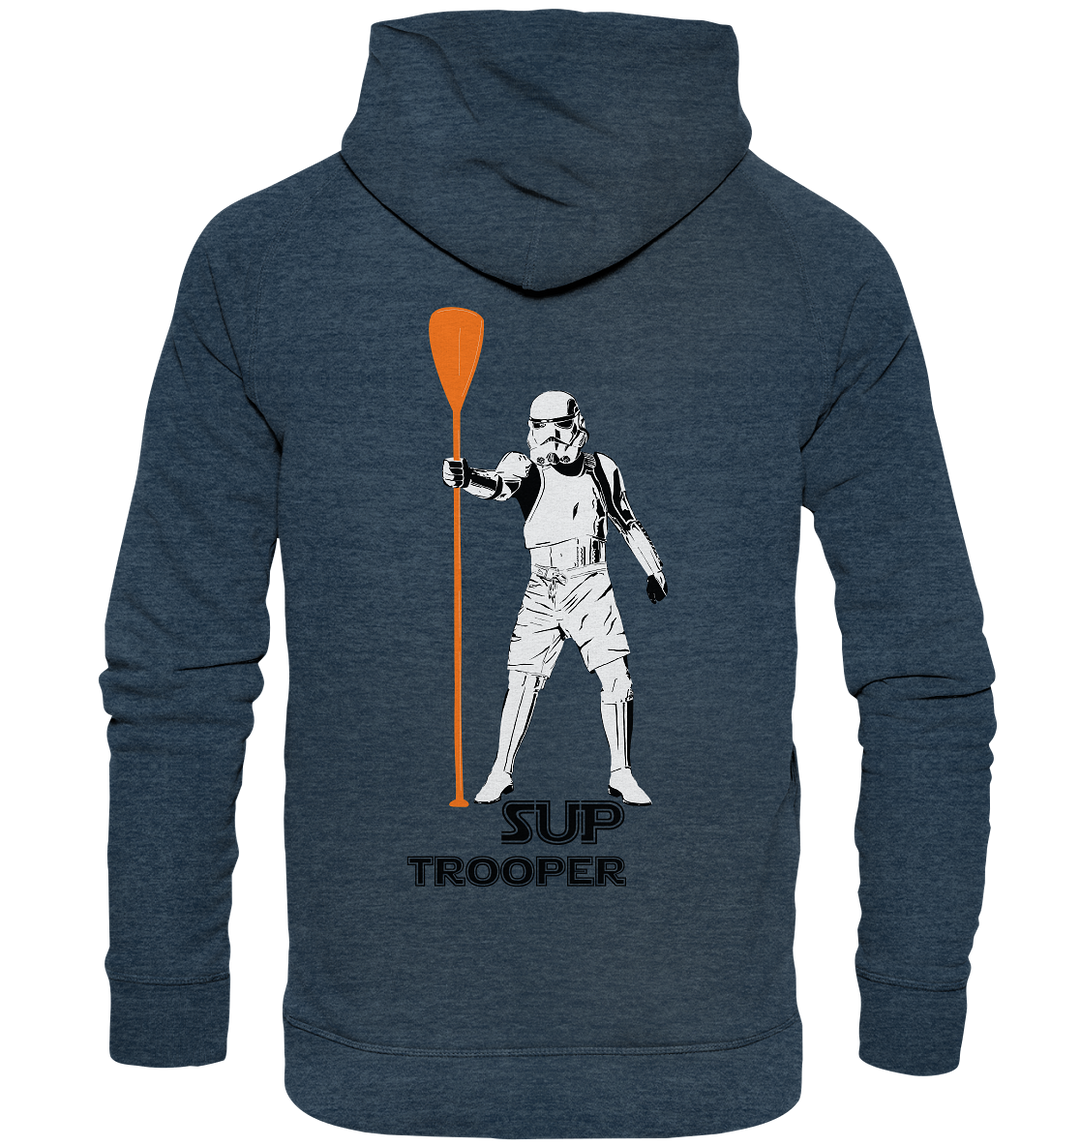 Trooper - SUP like a maschine